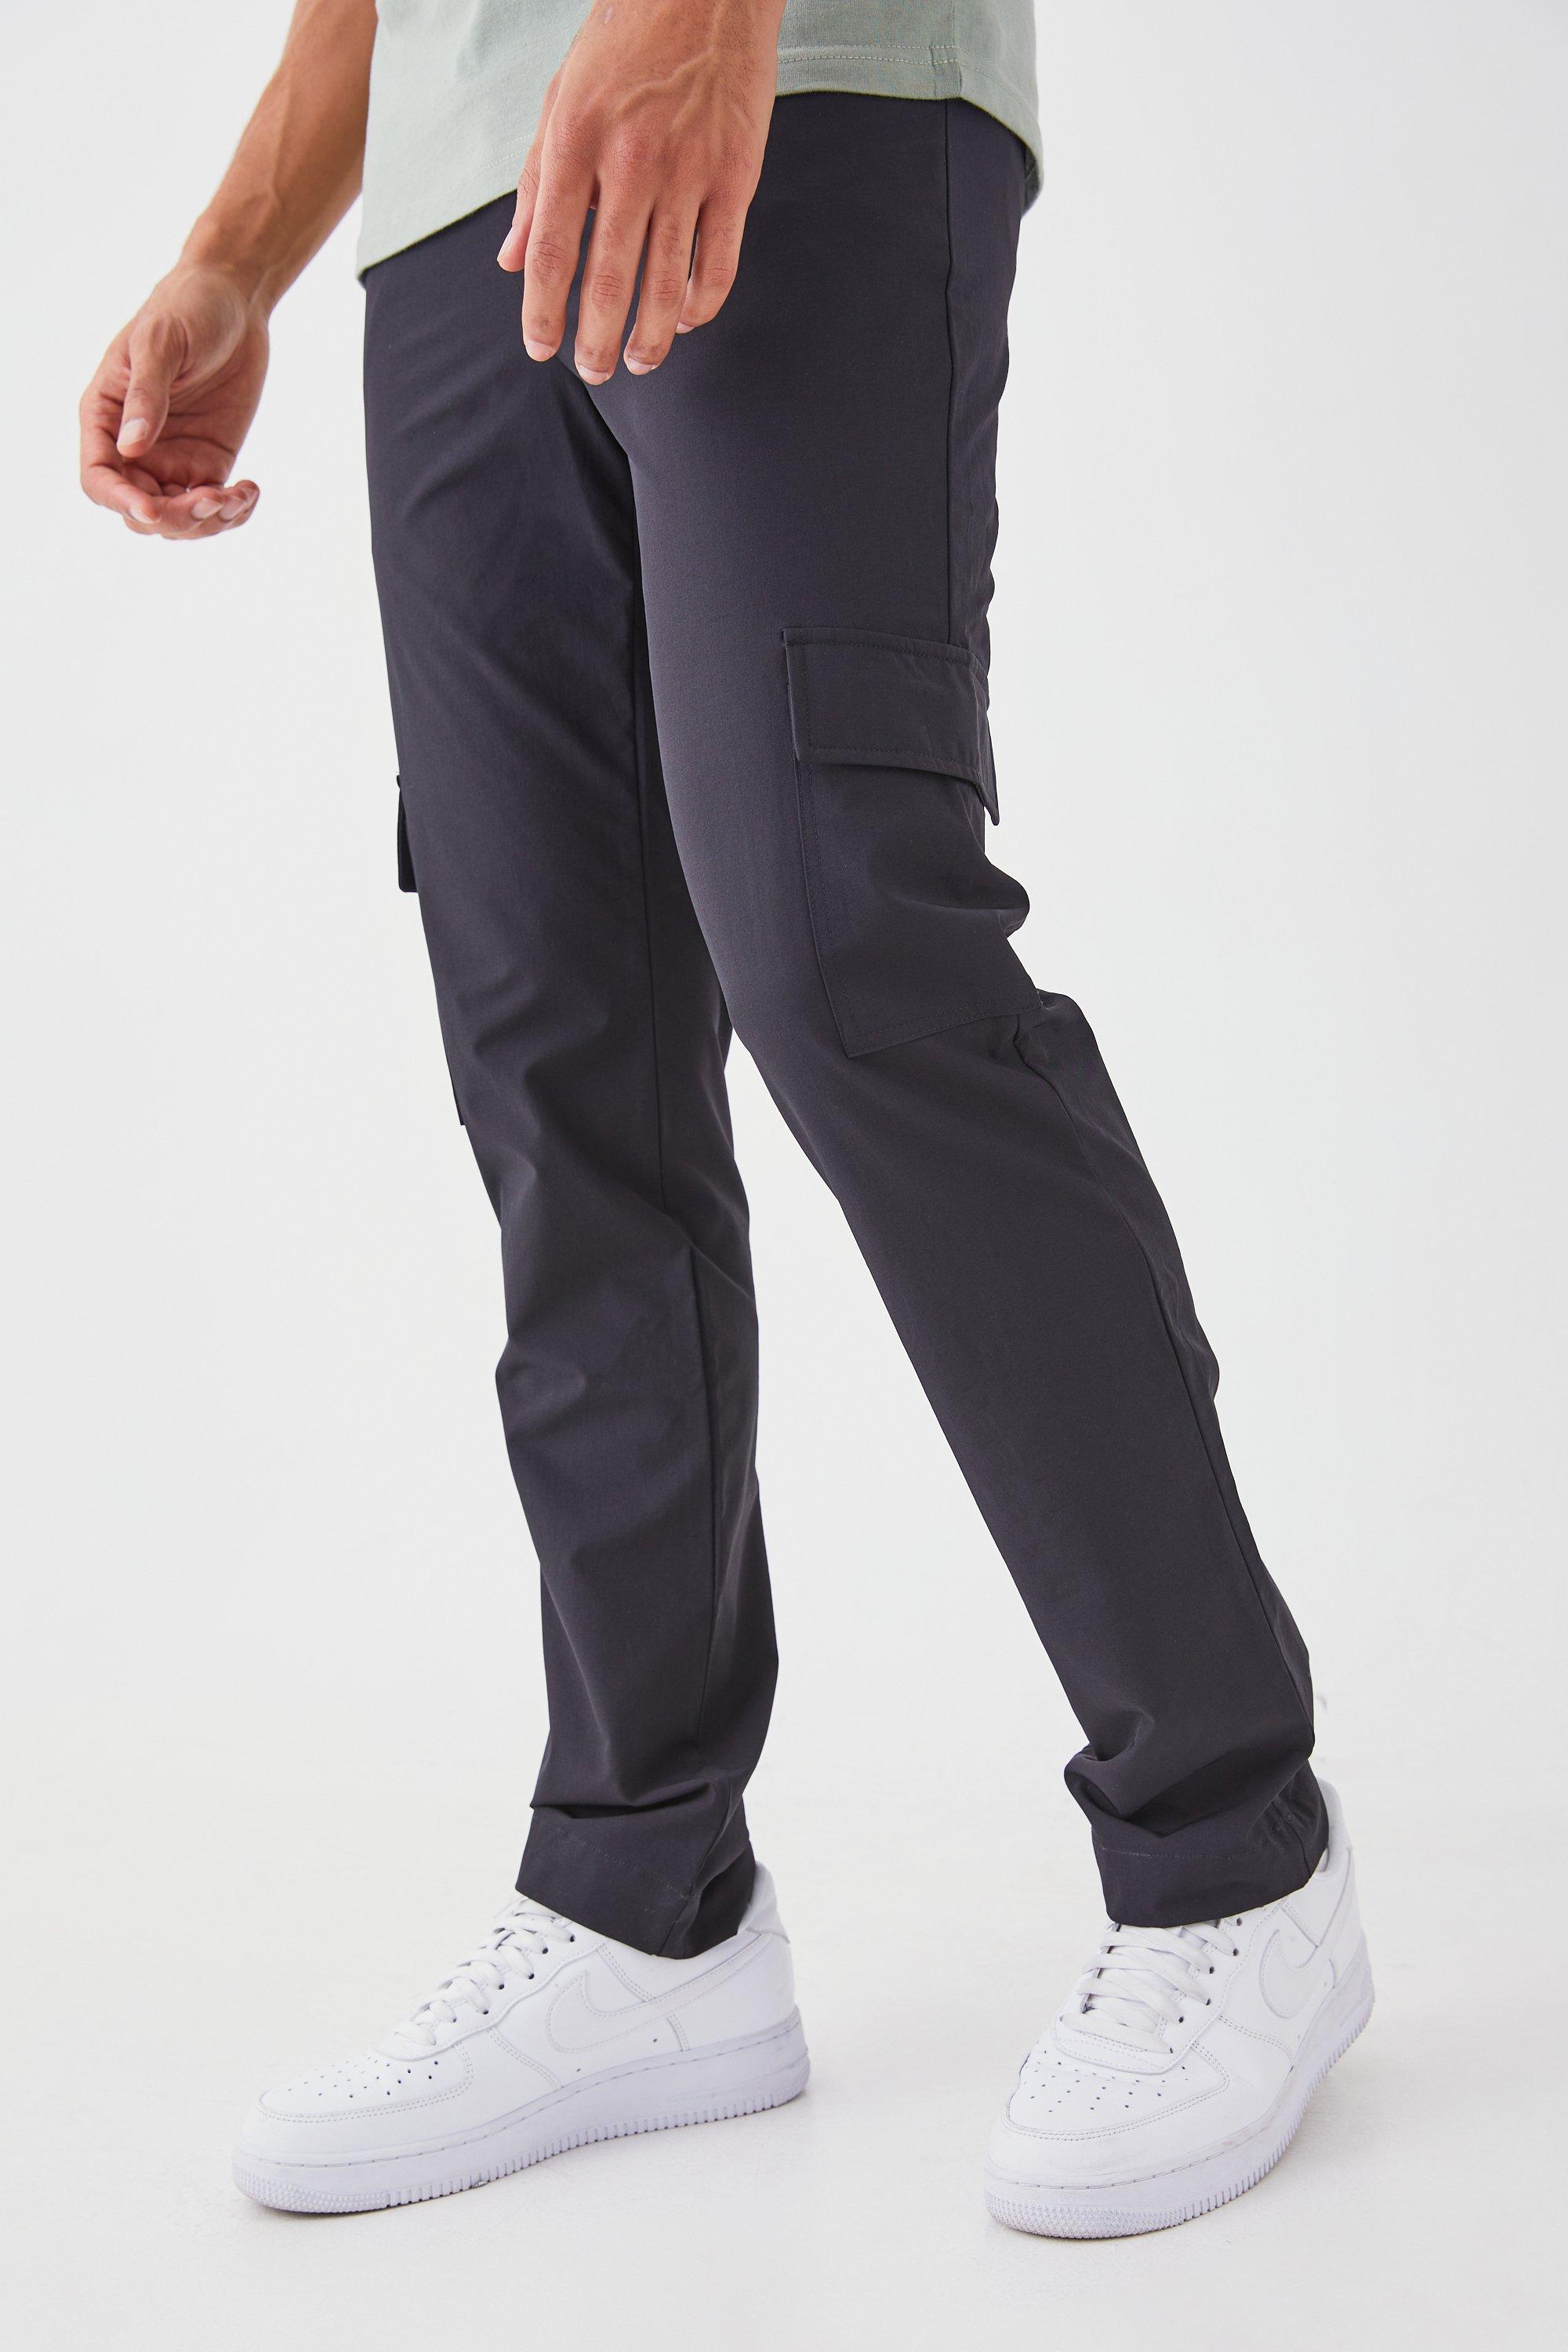 pantalon cargo droit homme - noir - 34, noir